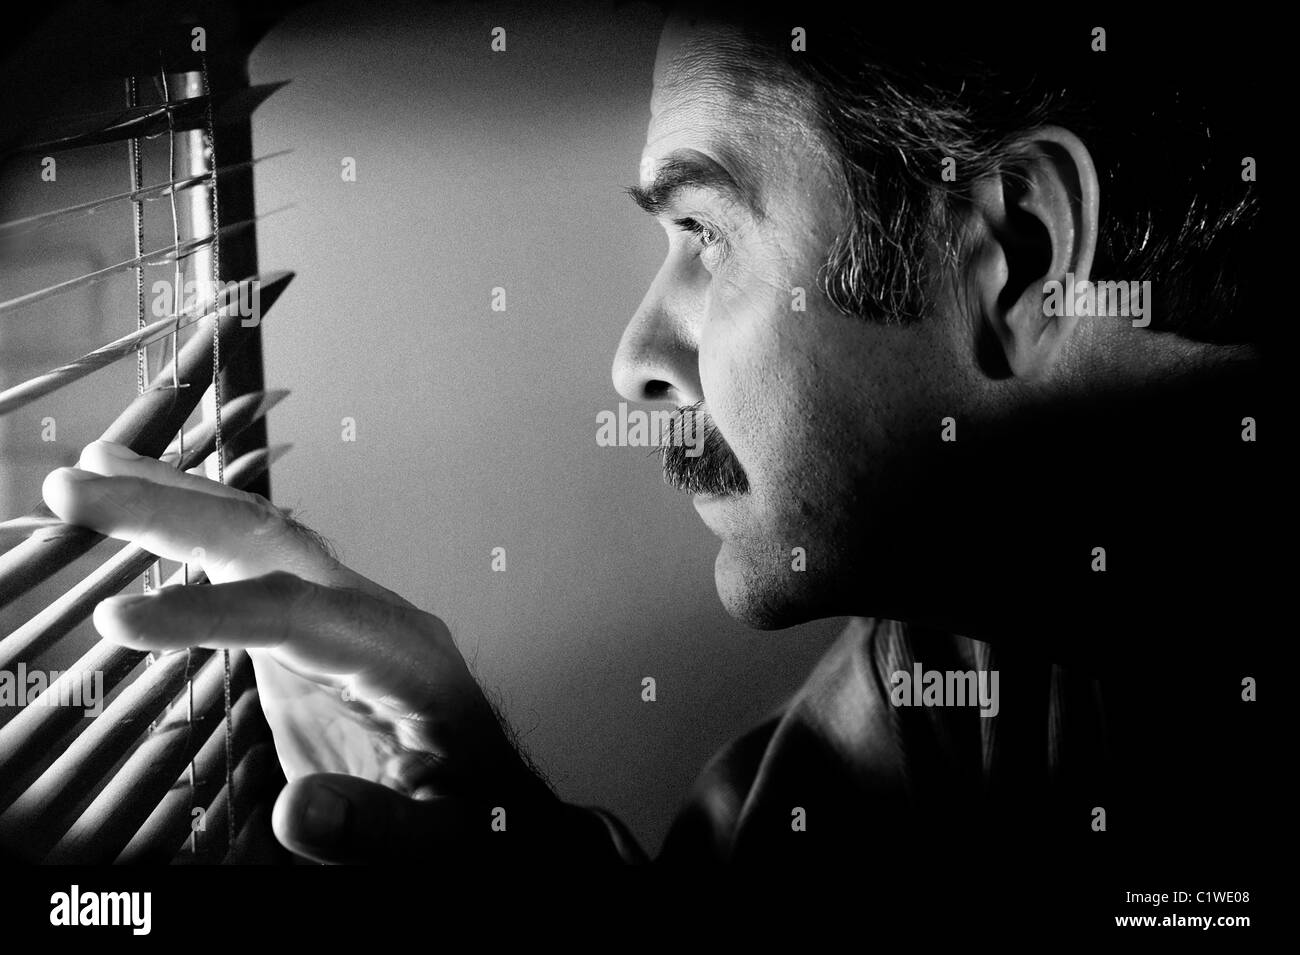 Bassa concetto chiave foto di un uomo in cerca furtivamente attraverso la finestra persiana. Bianco e nero immagine elaborata con particolari texture zigrinata Foto Stock